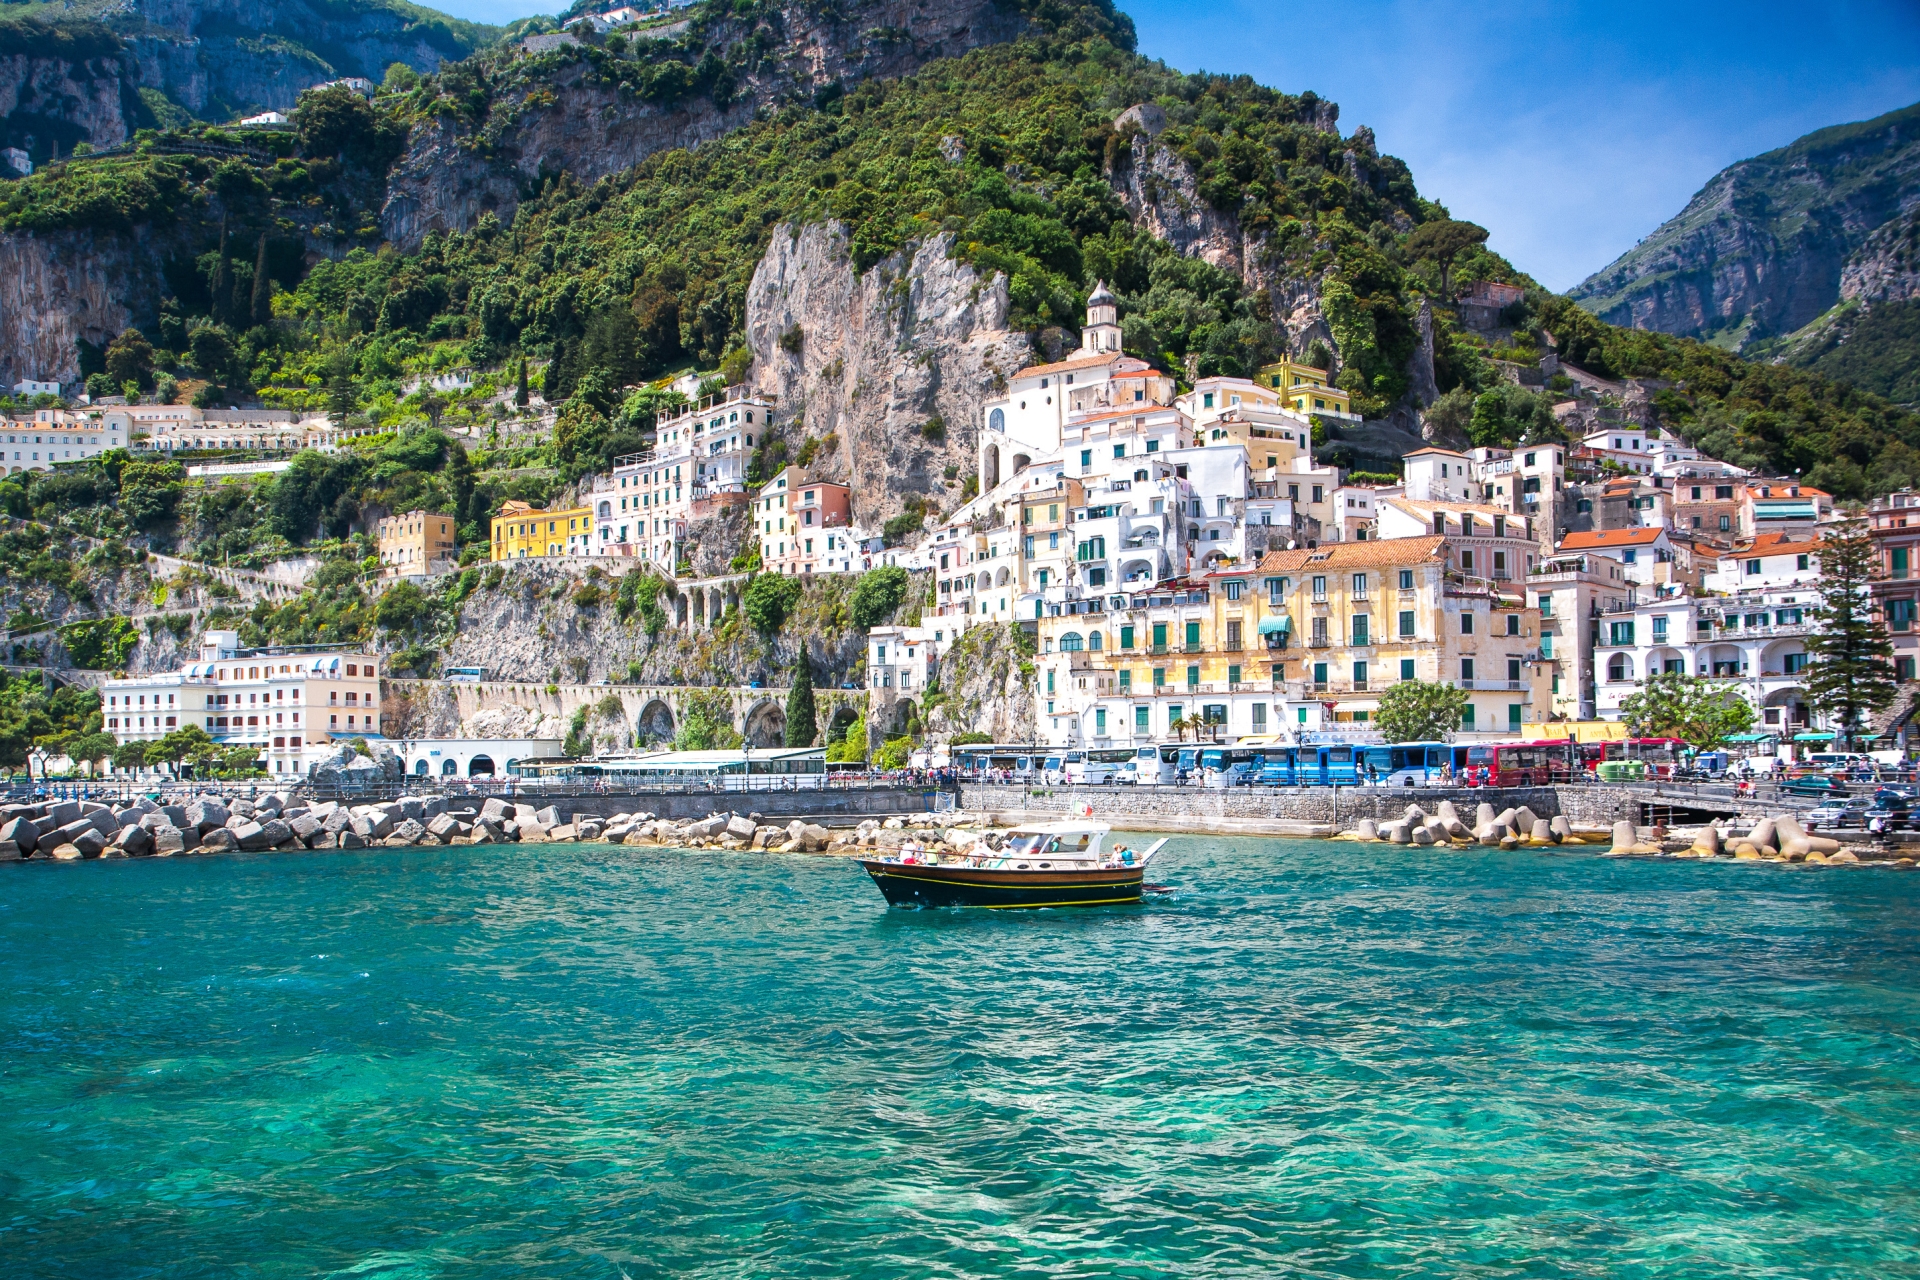 Positano - Honeymoon on the Amalfi Coast